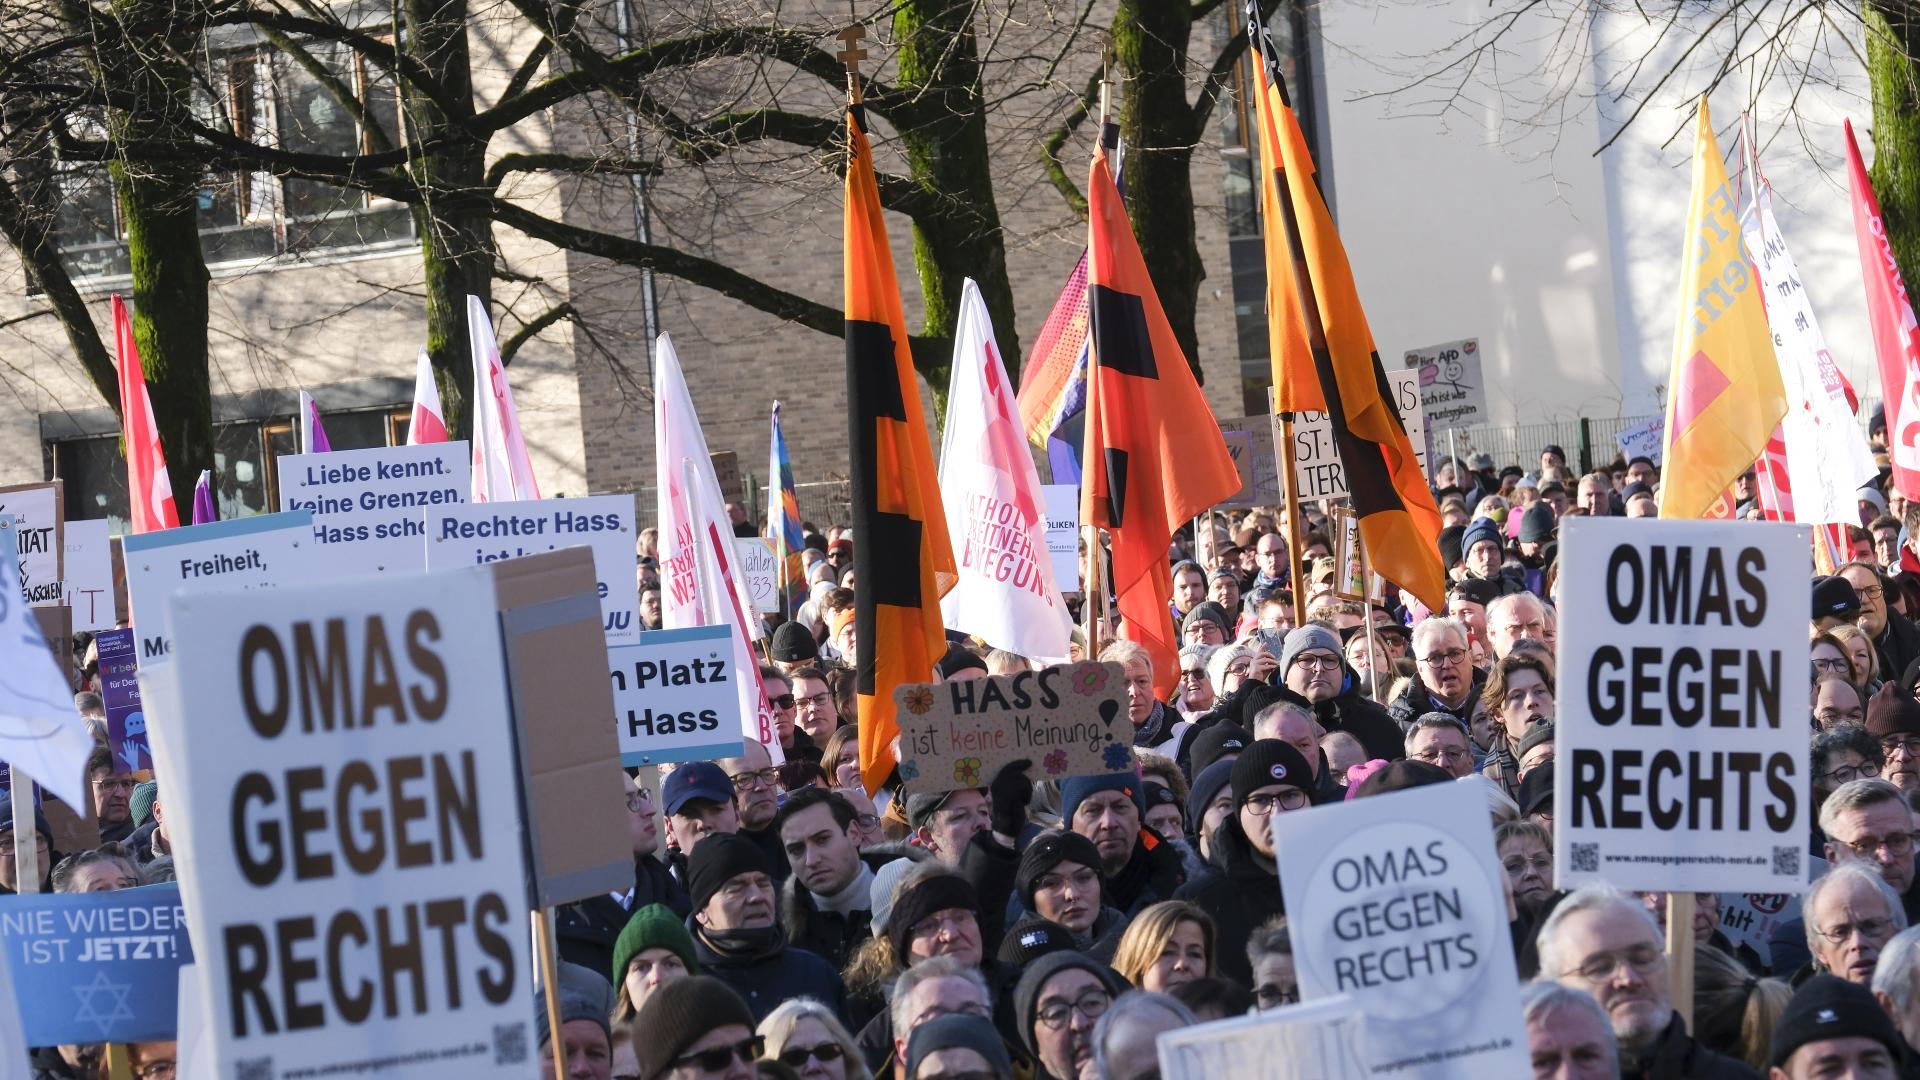 Viele Menschen stehen in einer Gruppe und Demonstrieren. Einige halten Plakate hoch, zum Beispiel "Omas gegen rechts".